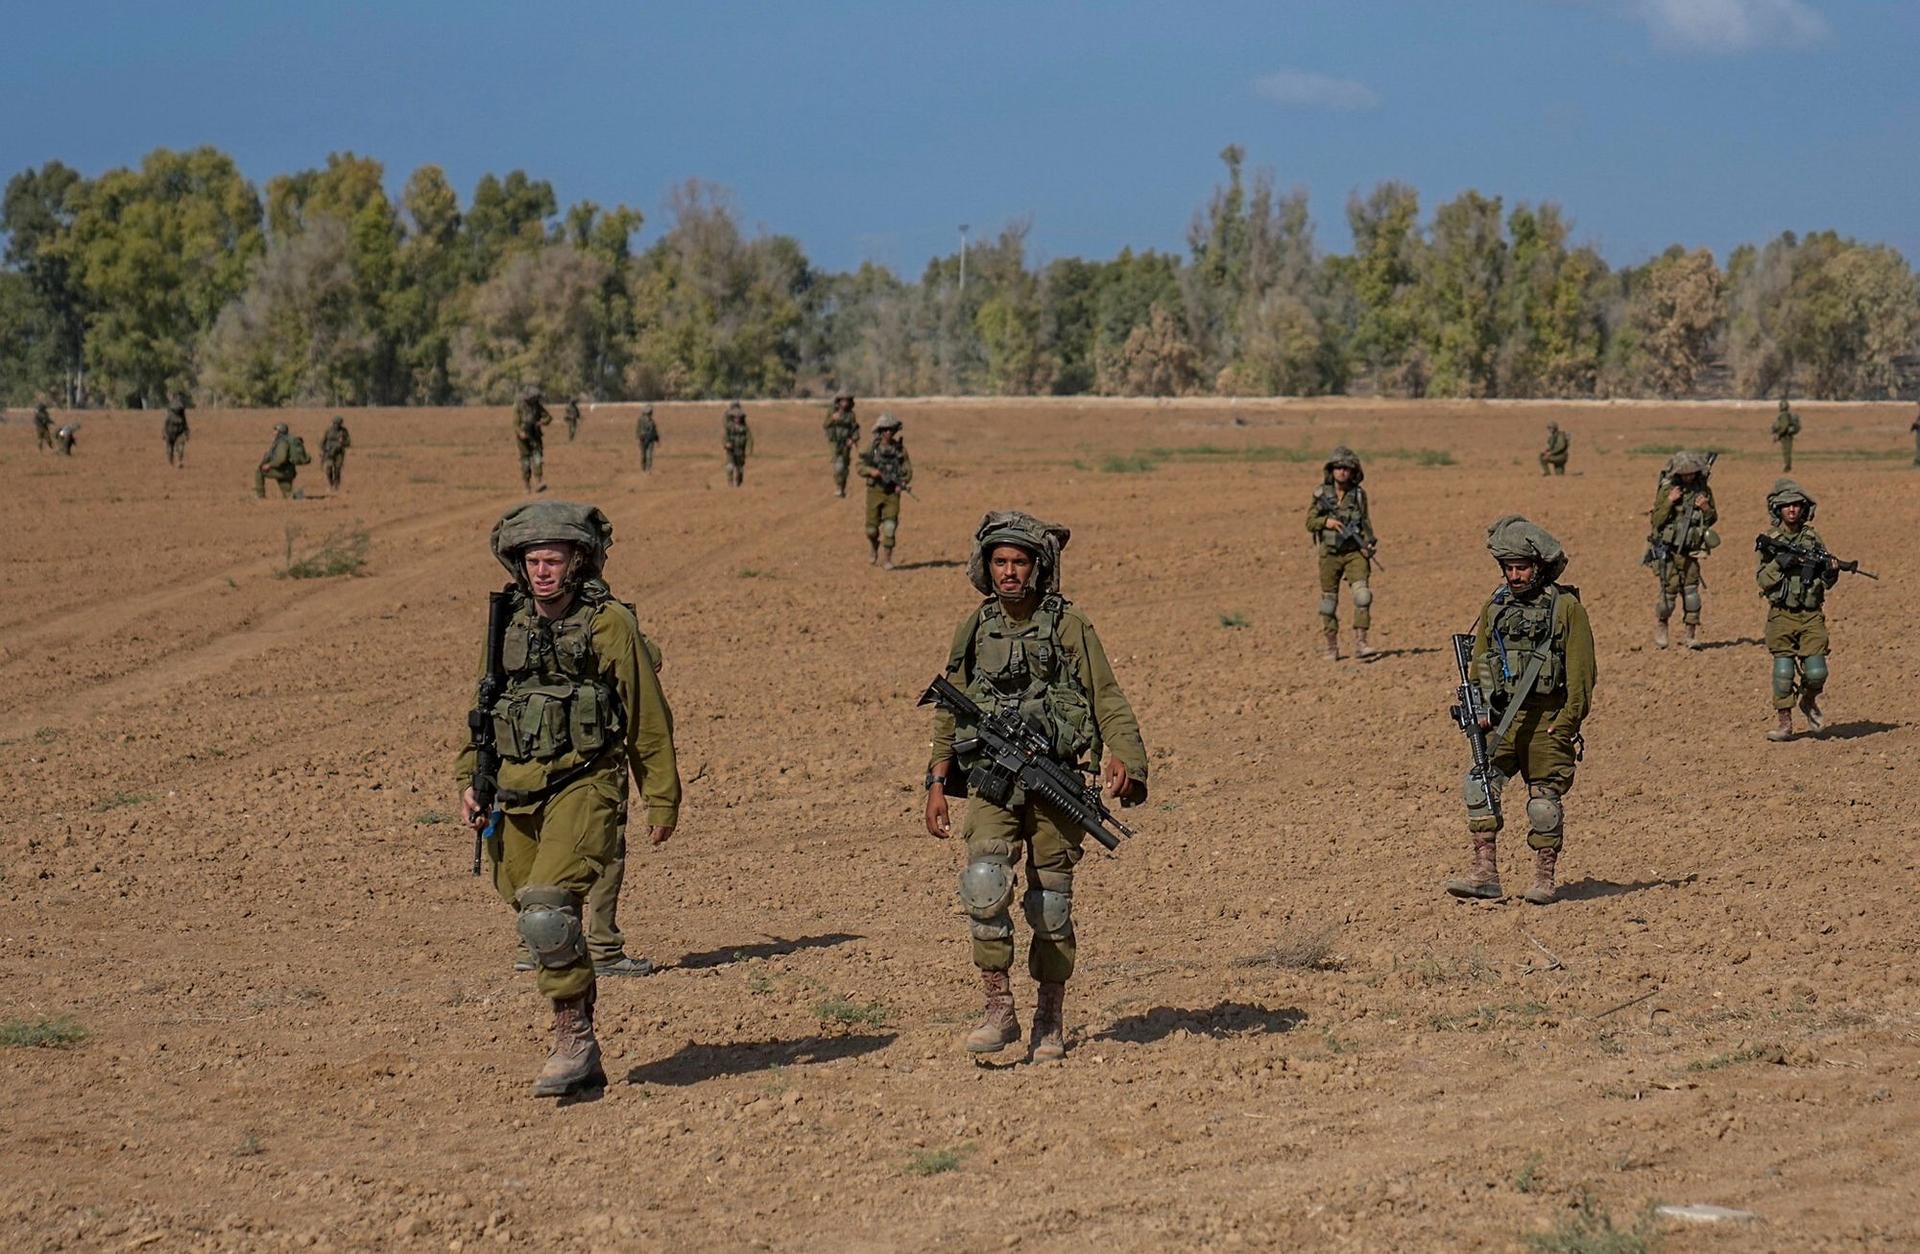 İsrail’e askerî yardım ABD’nin yasalarına aykırı